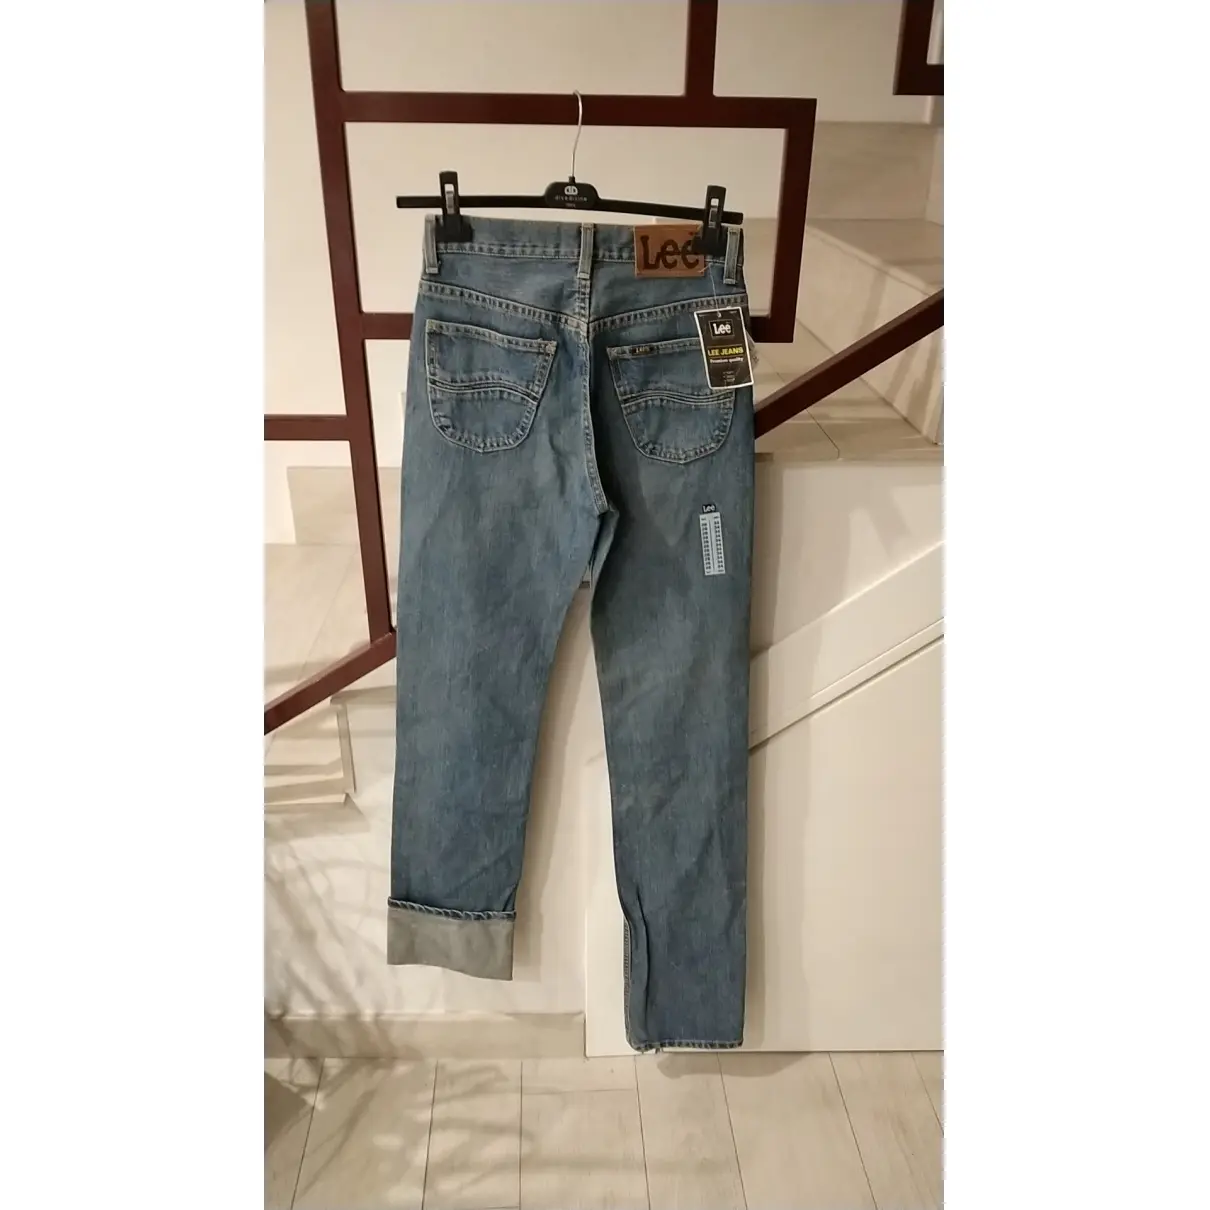 Buy Lee Jeans online